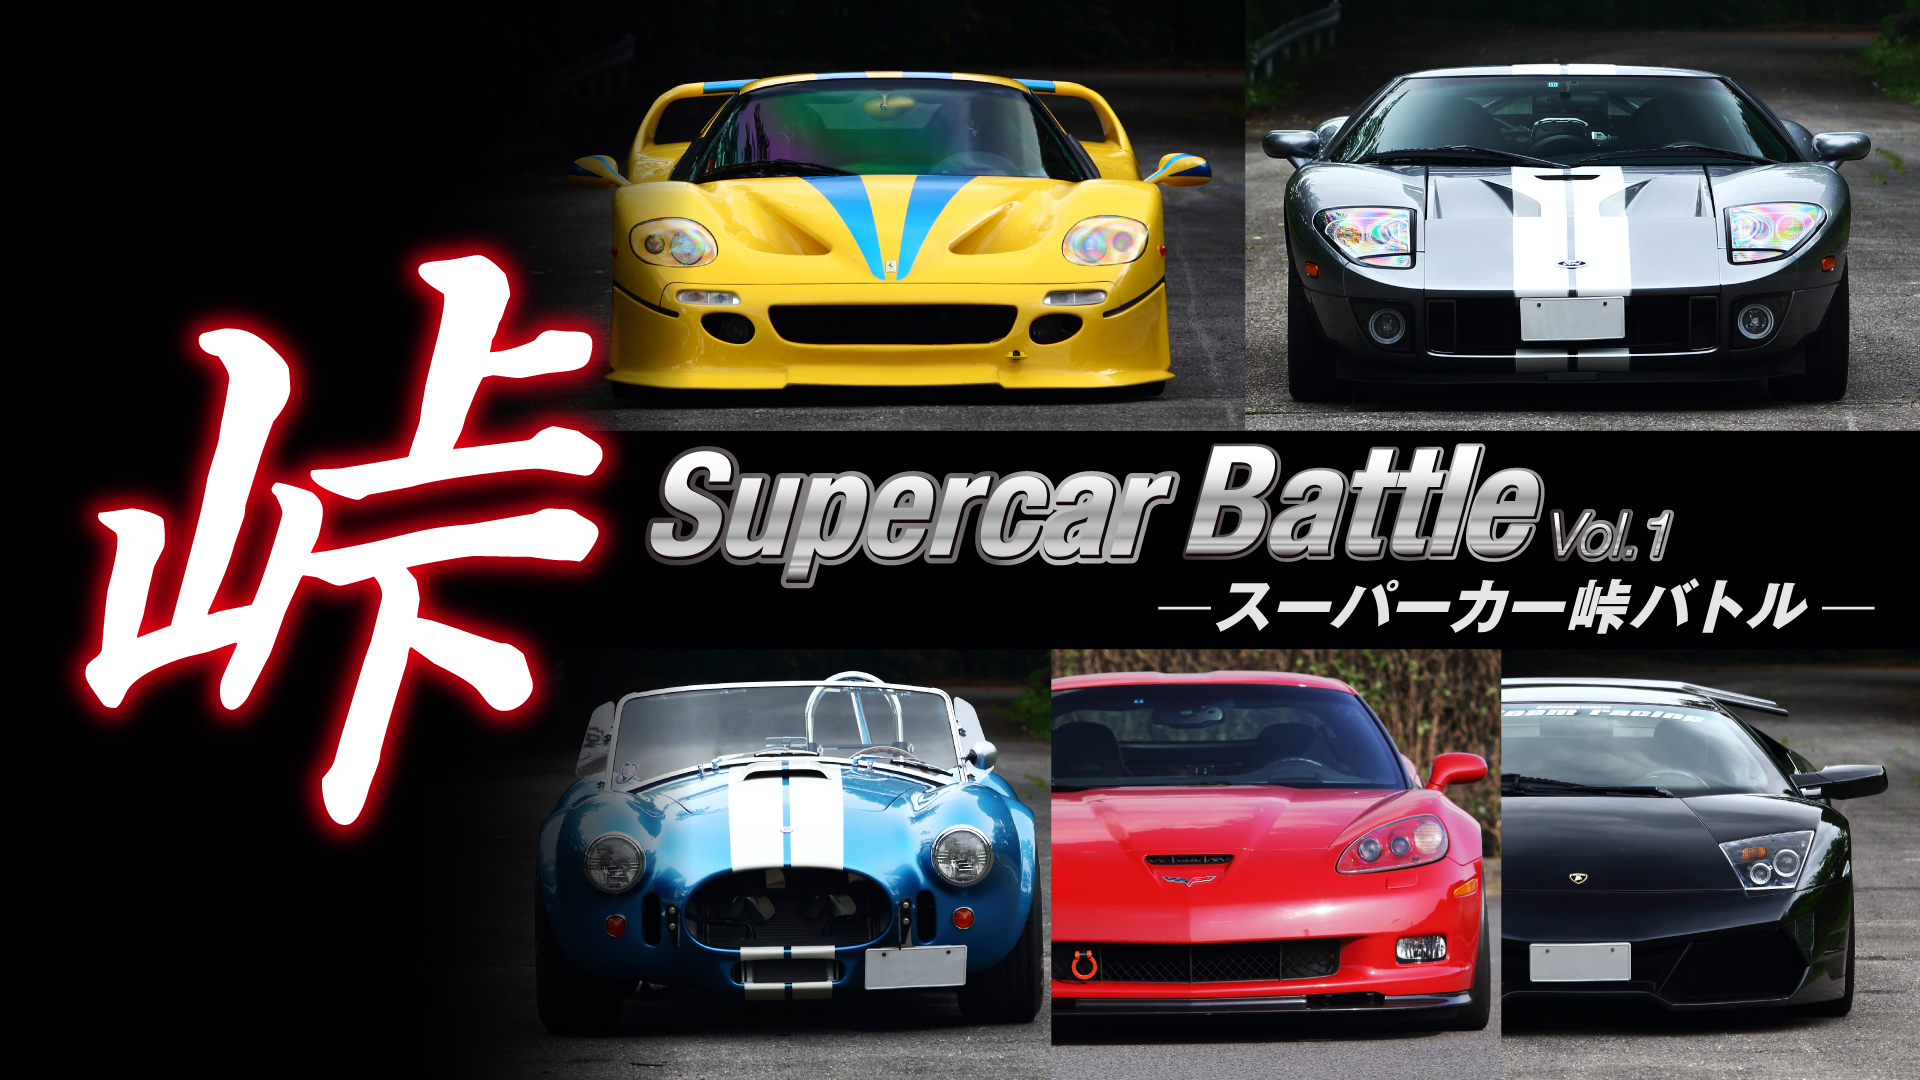 Supercar 峠 Battle vol.2(バラエティ / 2015) - 動画配信 | U-NEXT 31日間無料トライアル